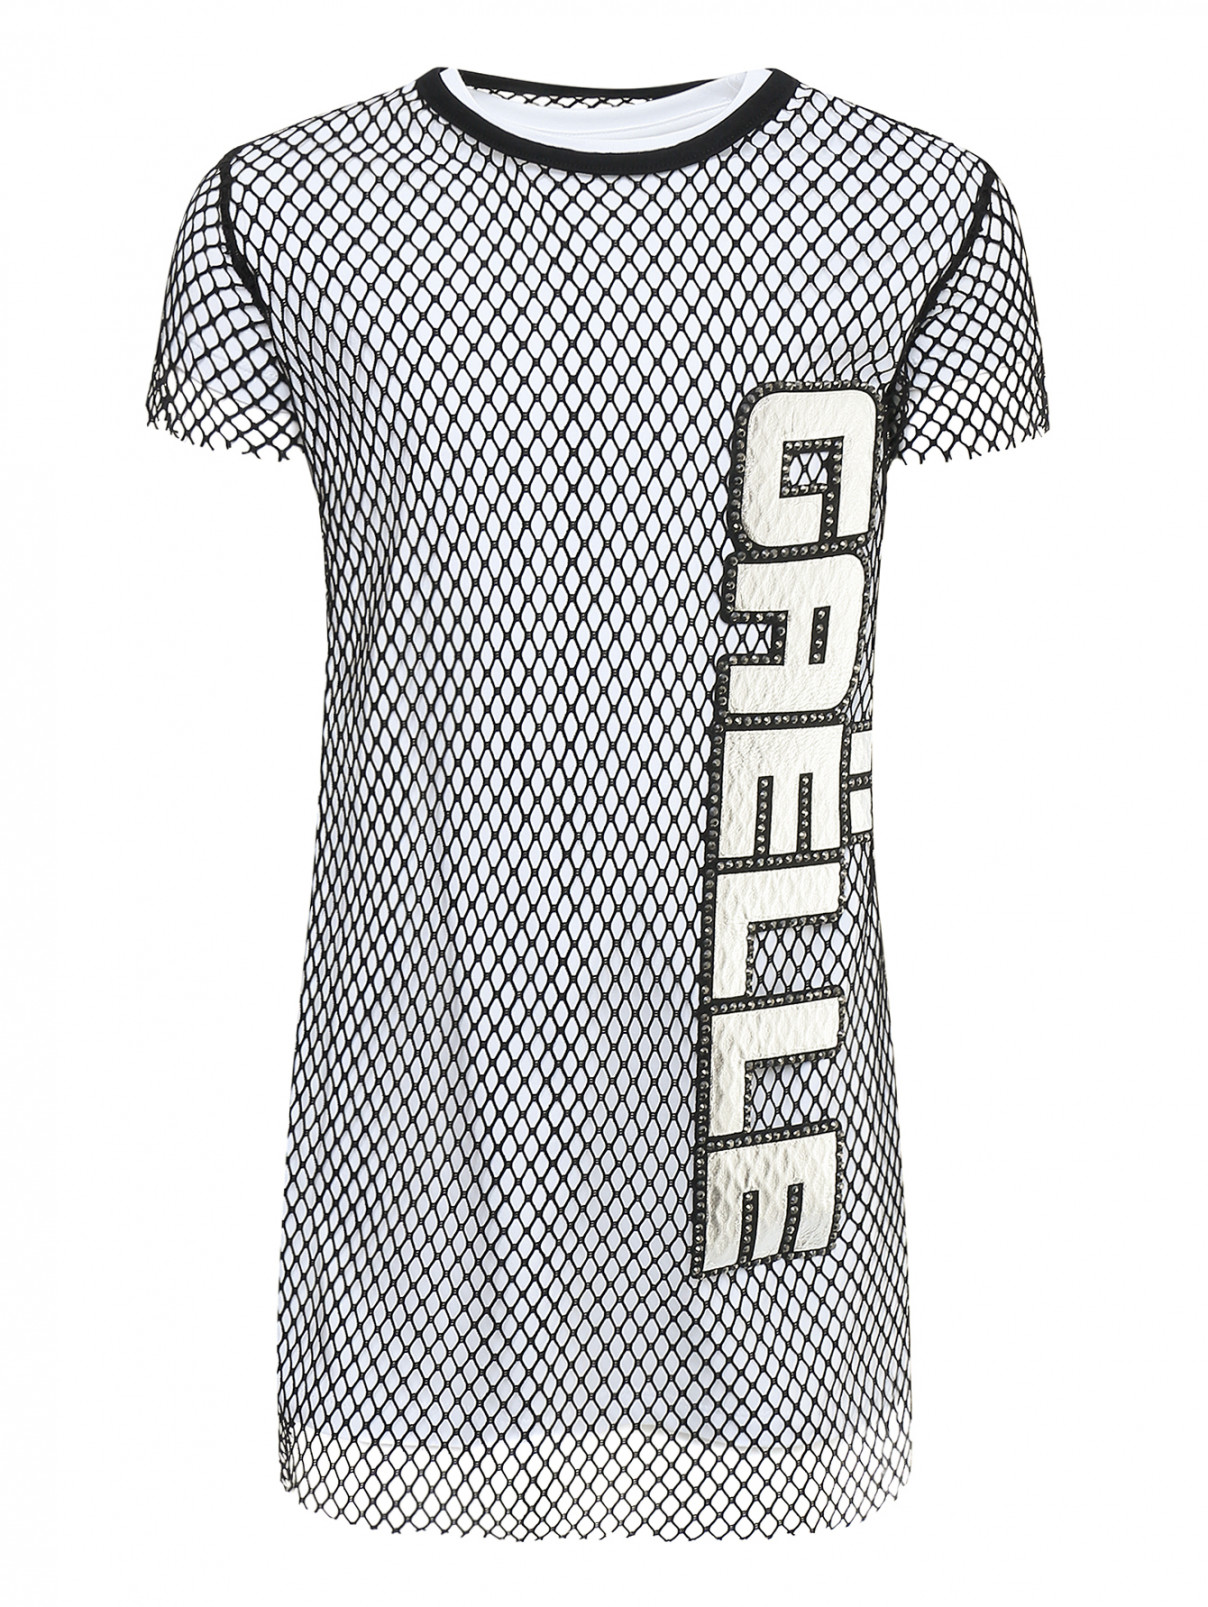 Платье трикотажное с накидкой Gaelle  –  Общий вид  – Цвет:  Черный